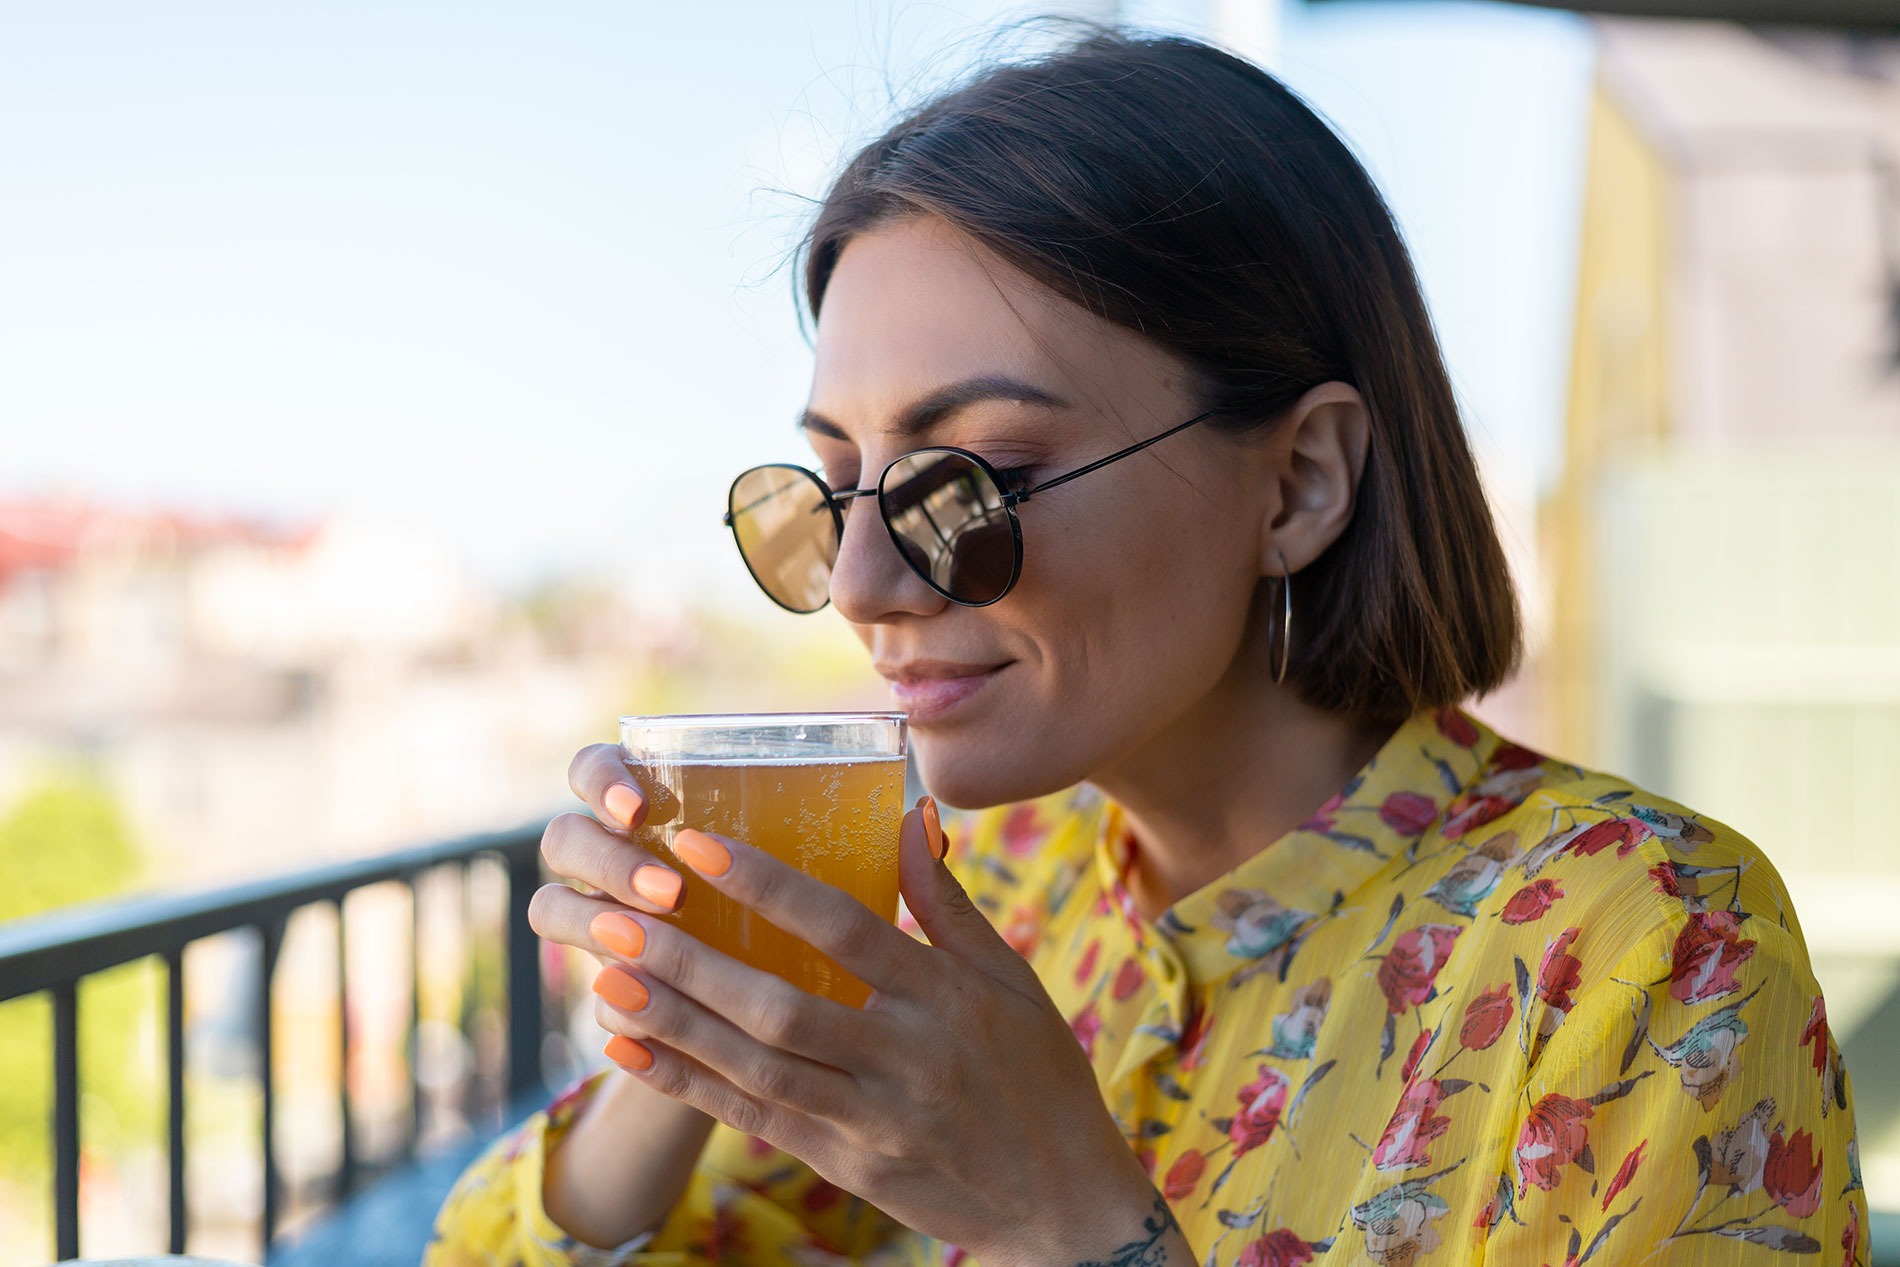 Eine Frau genießt ein Getränk: Die Verantwortung für die eigene Gesundheit erfordert maßvollen Alkoholkonsum